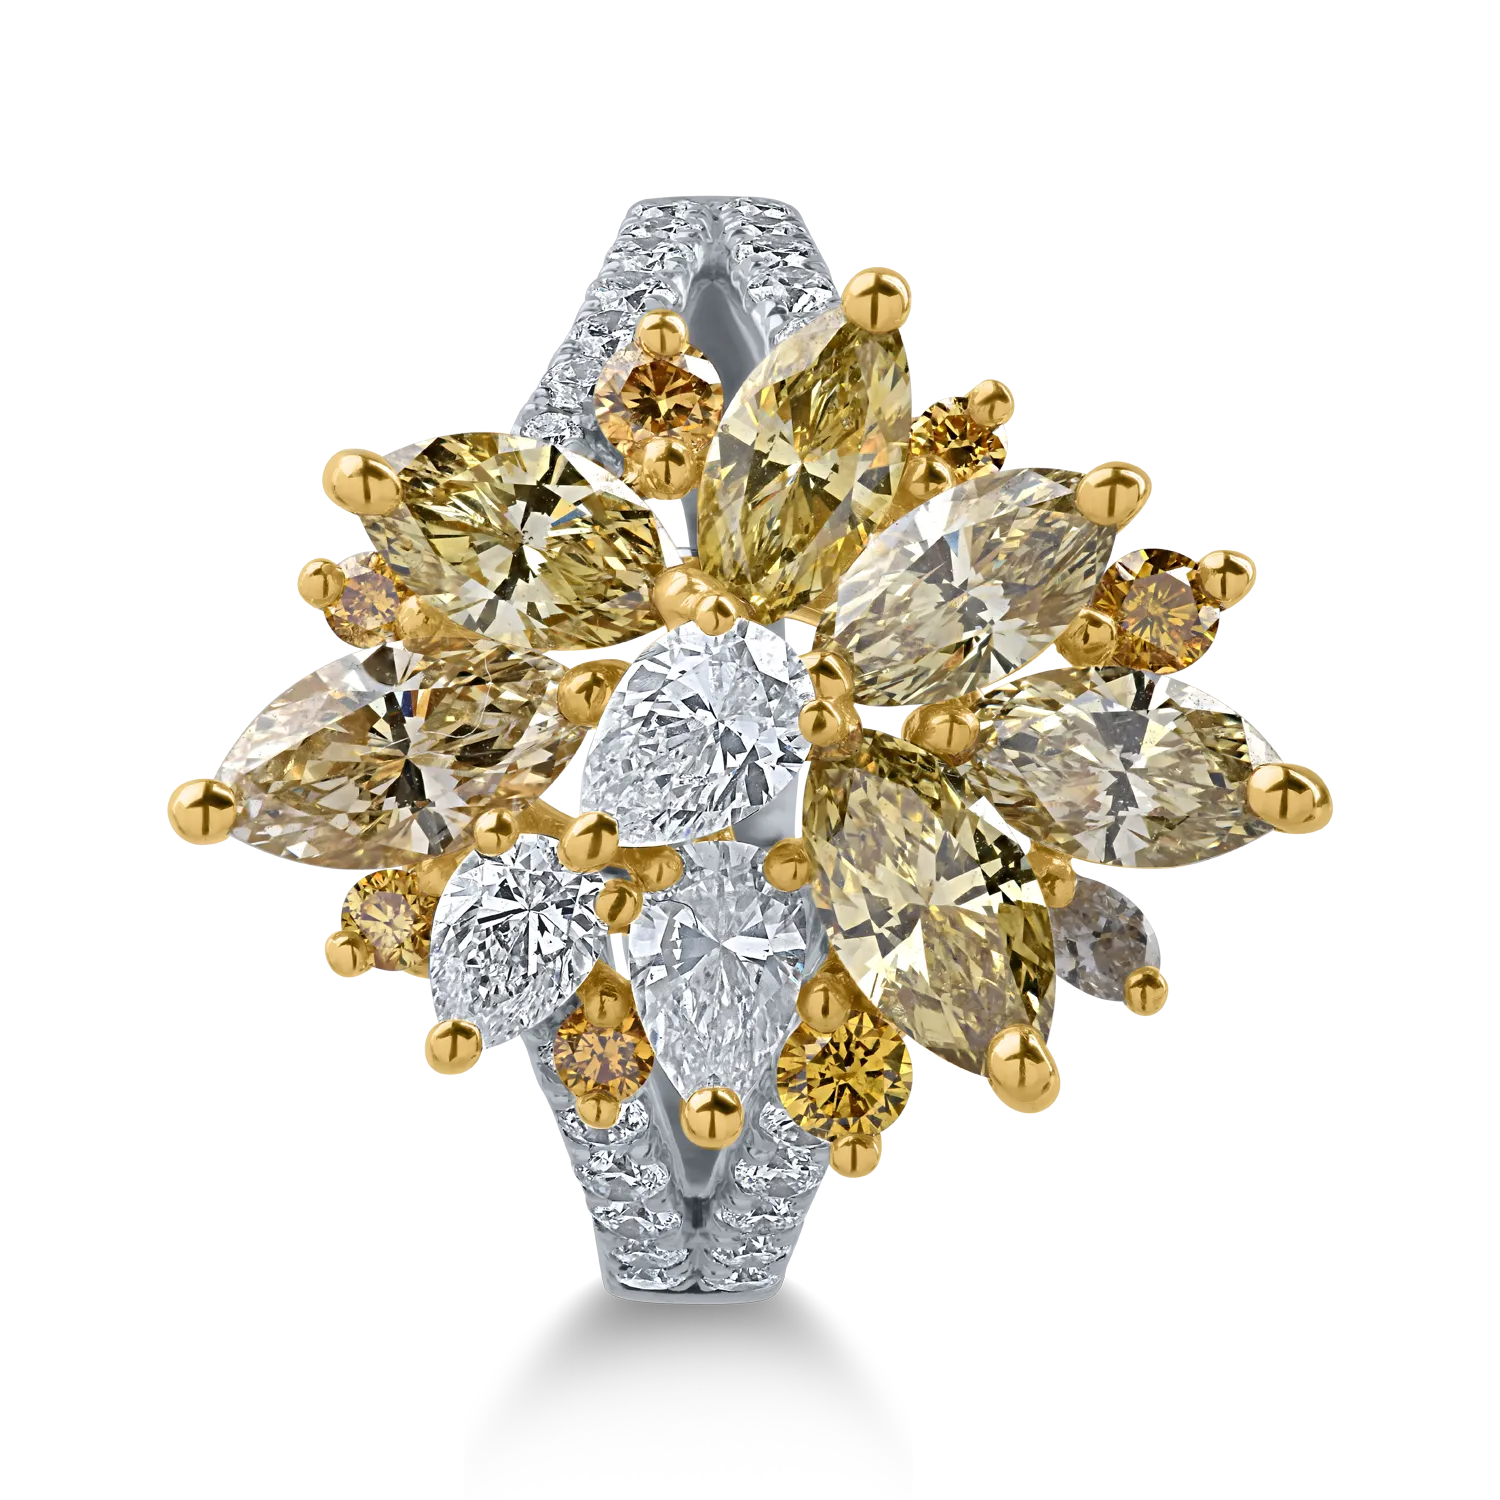 Fehér-sárga arany gyűrű 3.12ct gyémántokkal